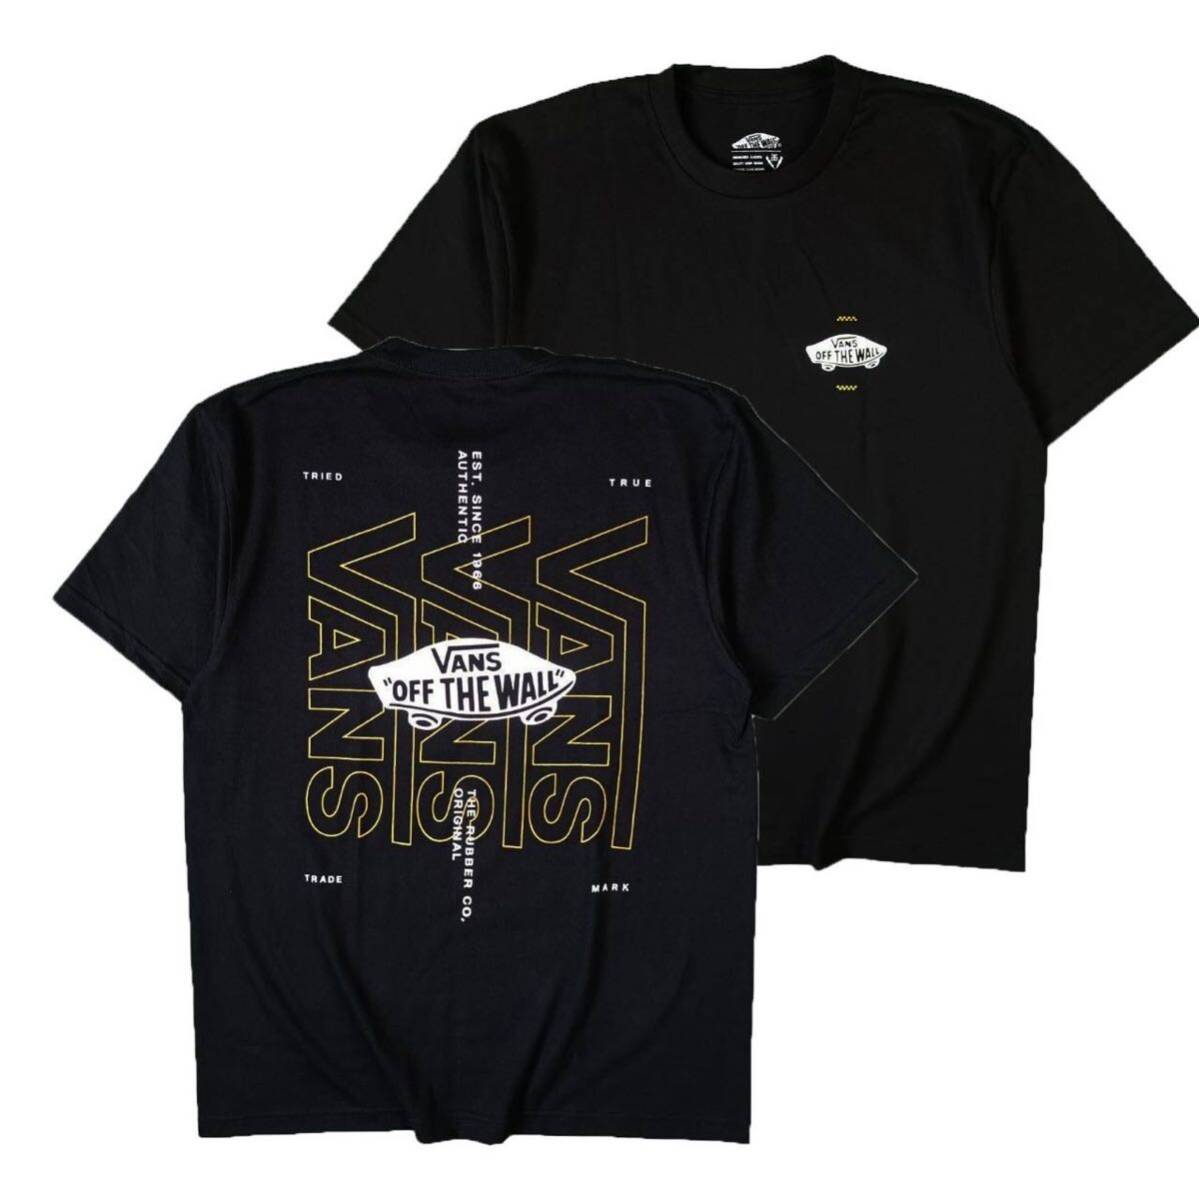 Tシャツ 半袖 バンズ VANS ストリート系 ロサンゼルス スケボー スケードボード カリフォルニア 黒 Lサイズ